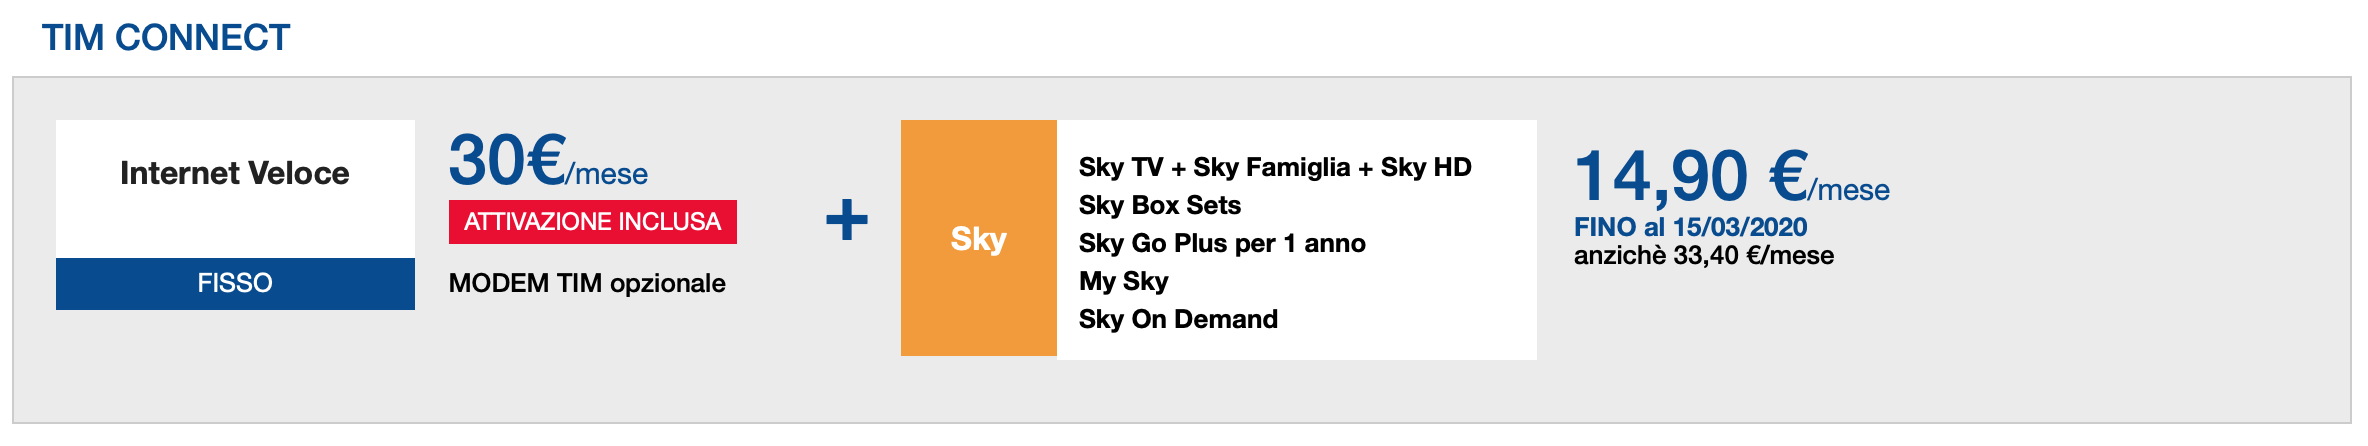 TIM Sky, prezzi e caratteristiche del pacchetto tutto incluso 1